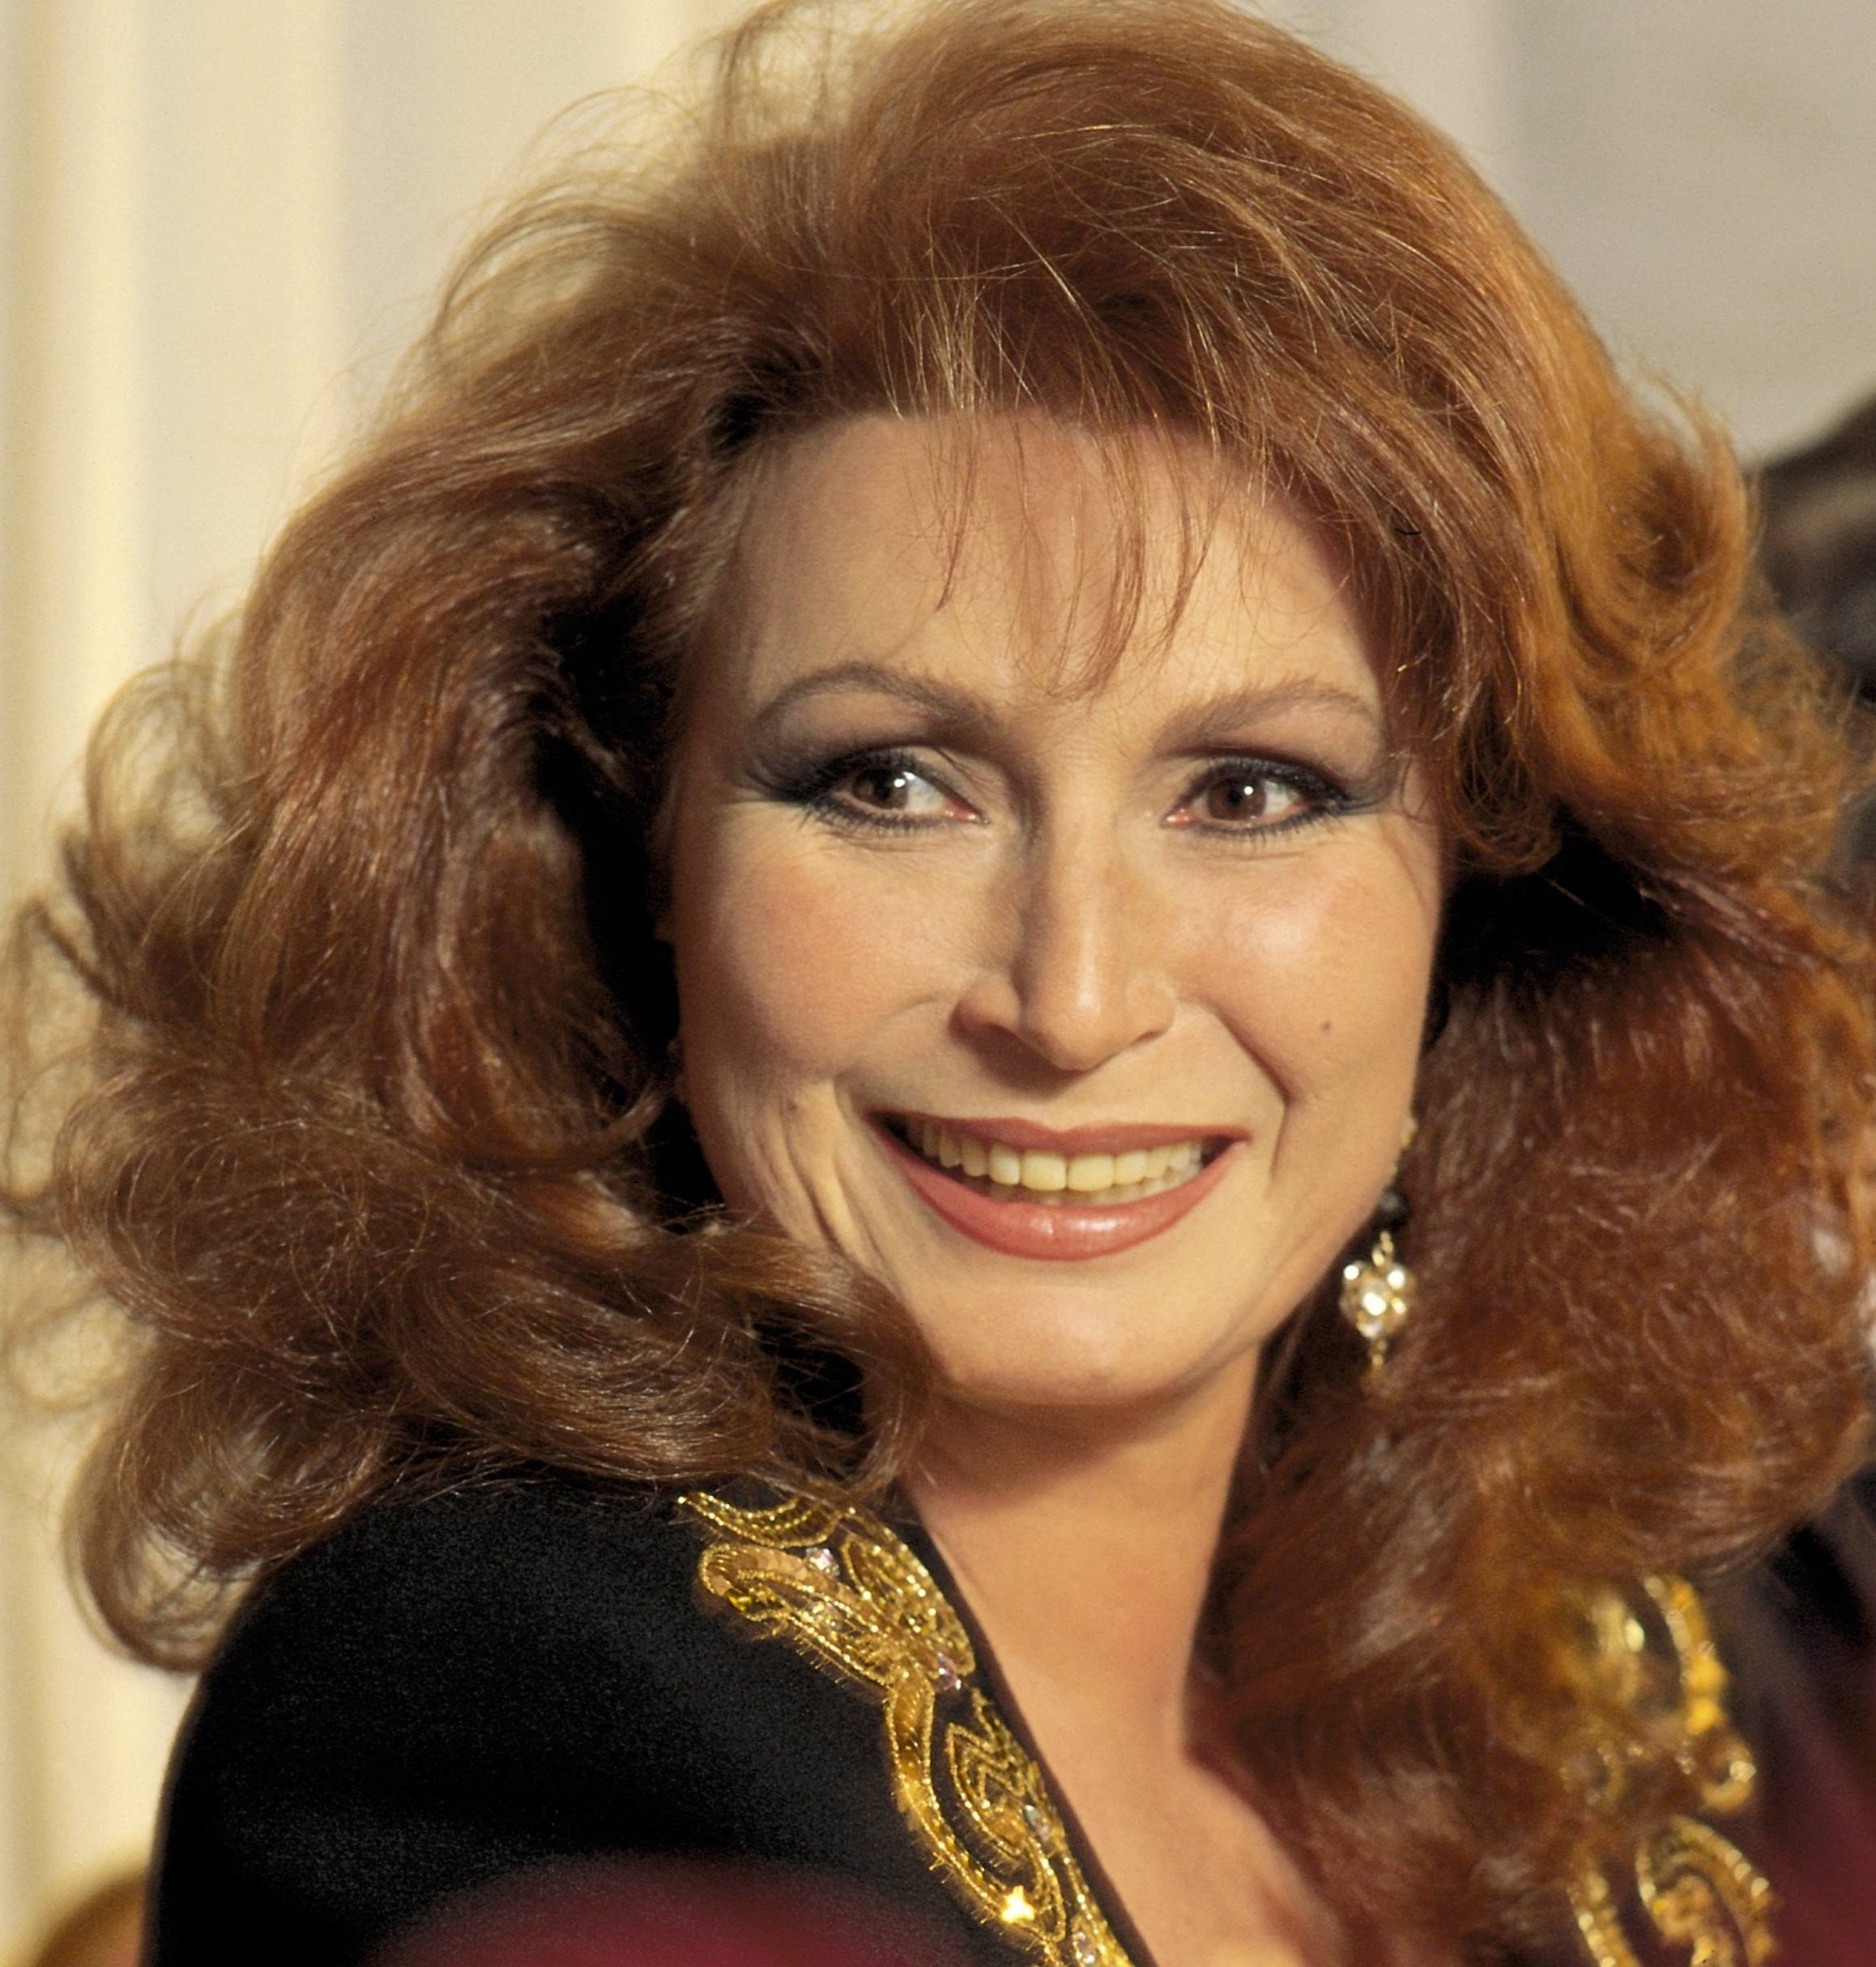 Retrato de la cantante española, Rocío Jurado. Año 2006. | Foto: Getty Images